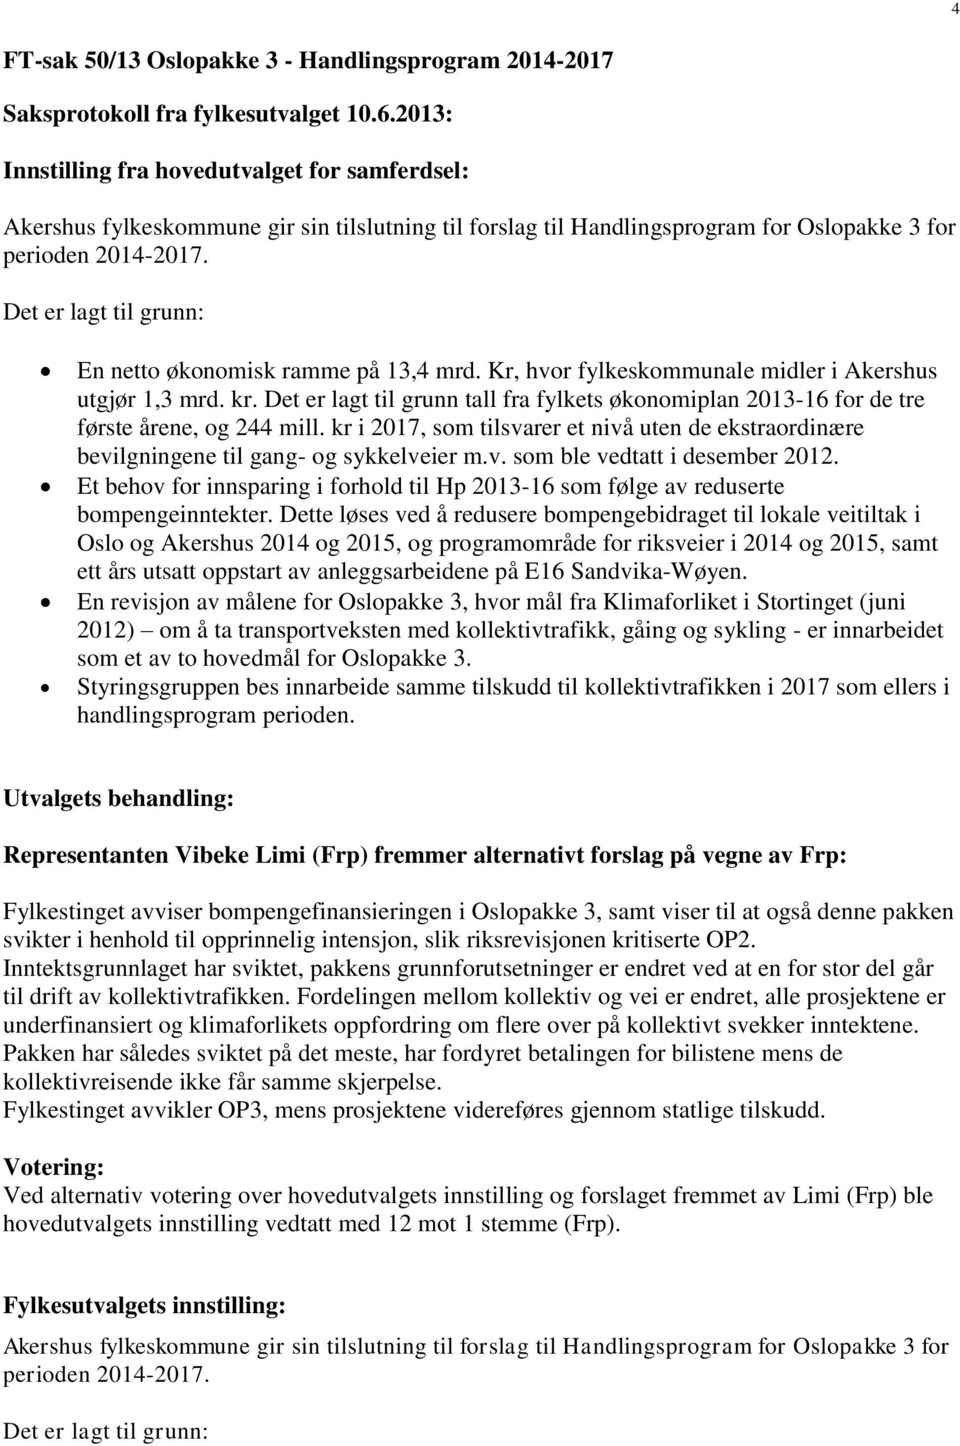 Det er lagt til grunn: En netto økonomisk ramme på 13,4 mrd. Kr, hvor fylkeskommunale midler i Akershus utgjør 1,3 mrd. kr.